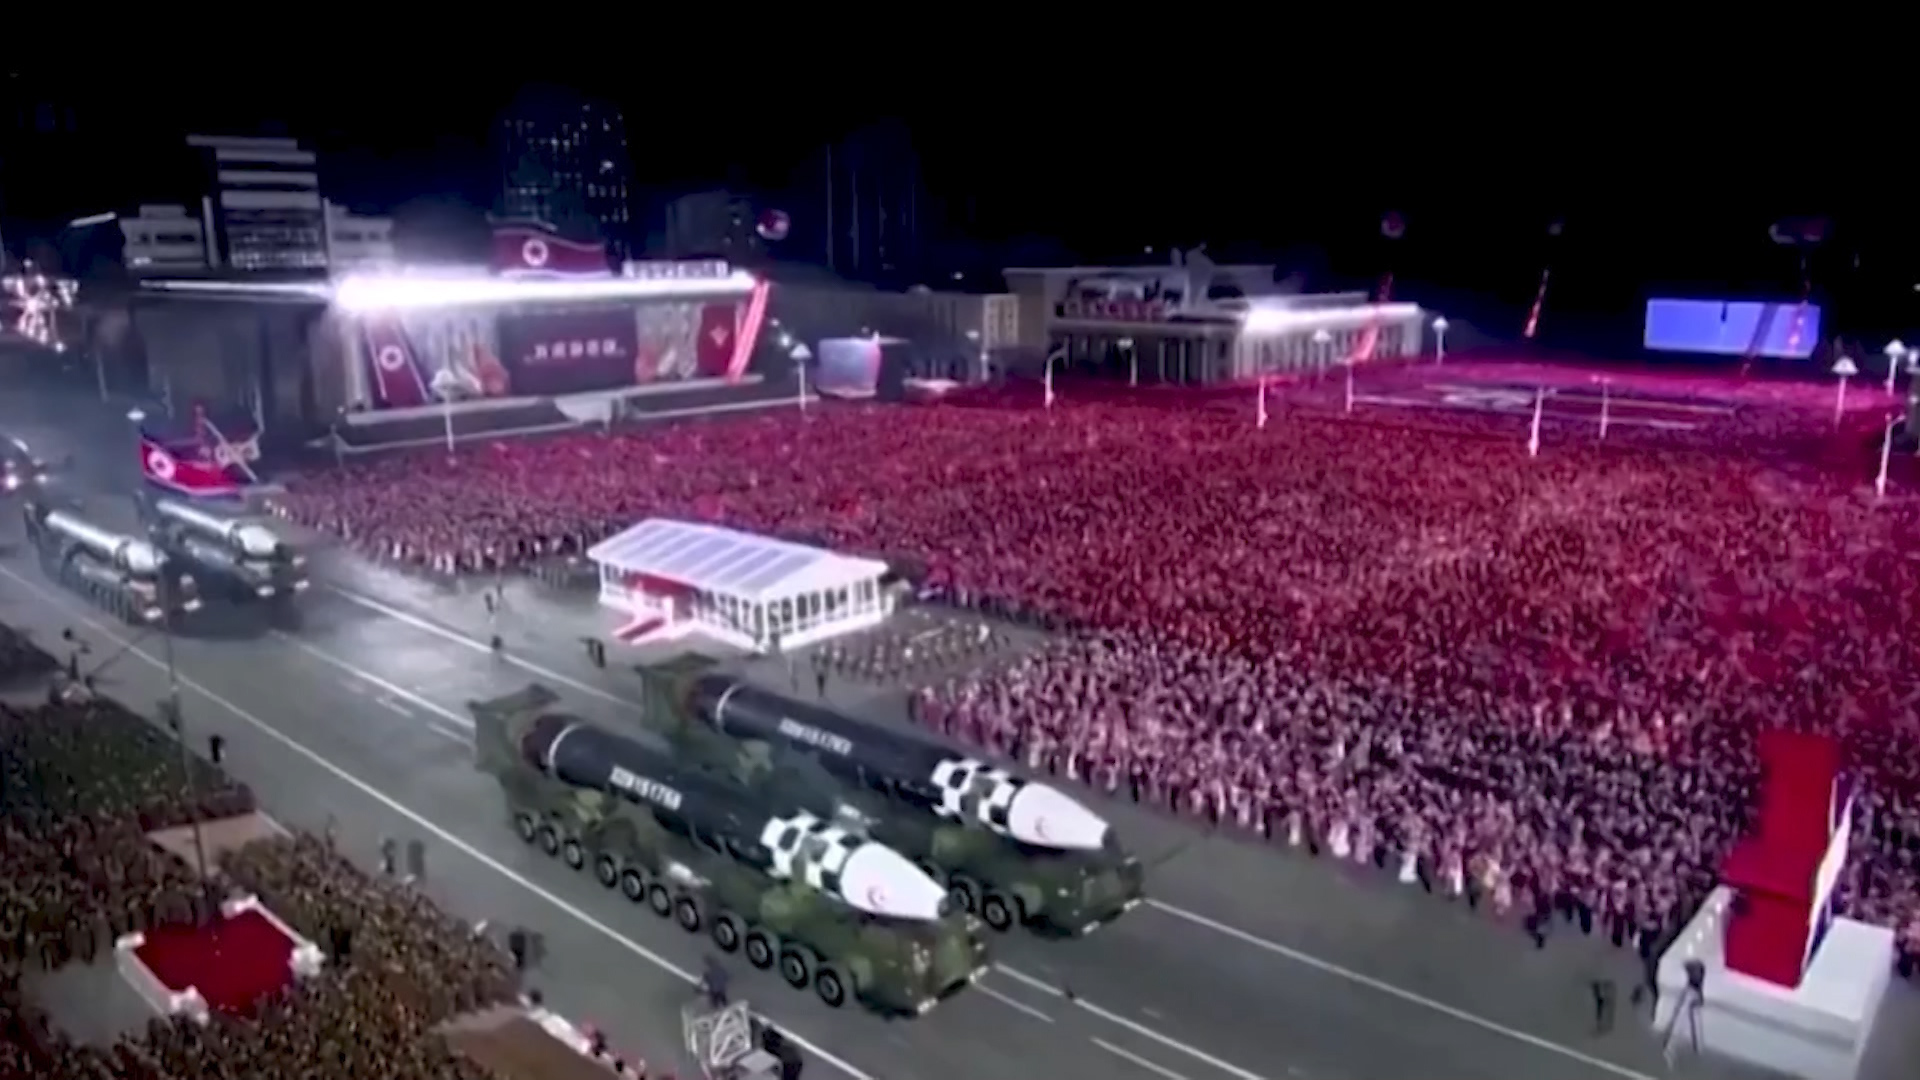 Koreja e Veriut, rinis testimet raketore duke rritur tensionet me rivalët! Japonia: Provokim i qartë, kërcënojnë paqen në gadishull